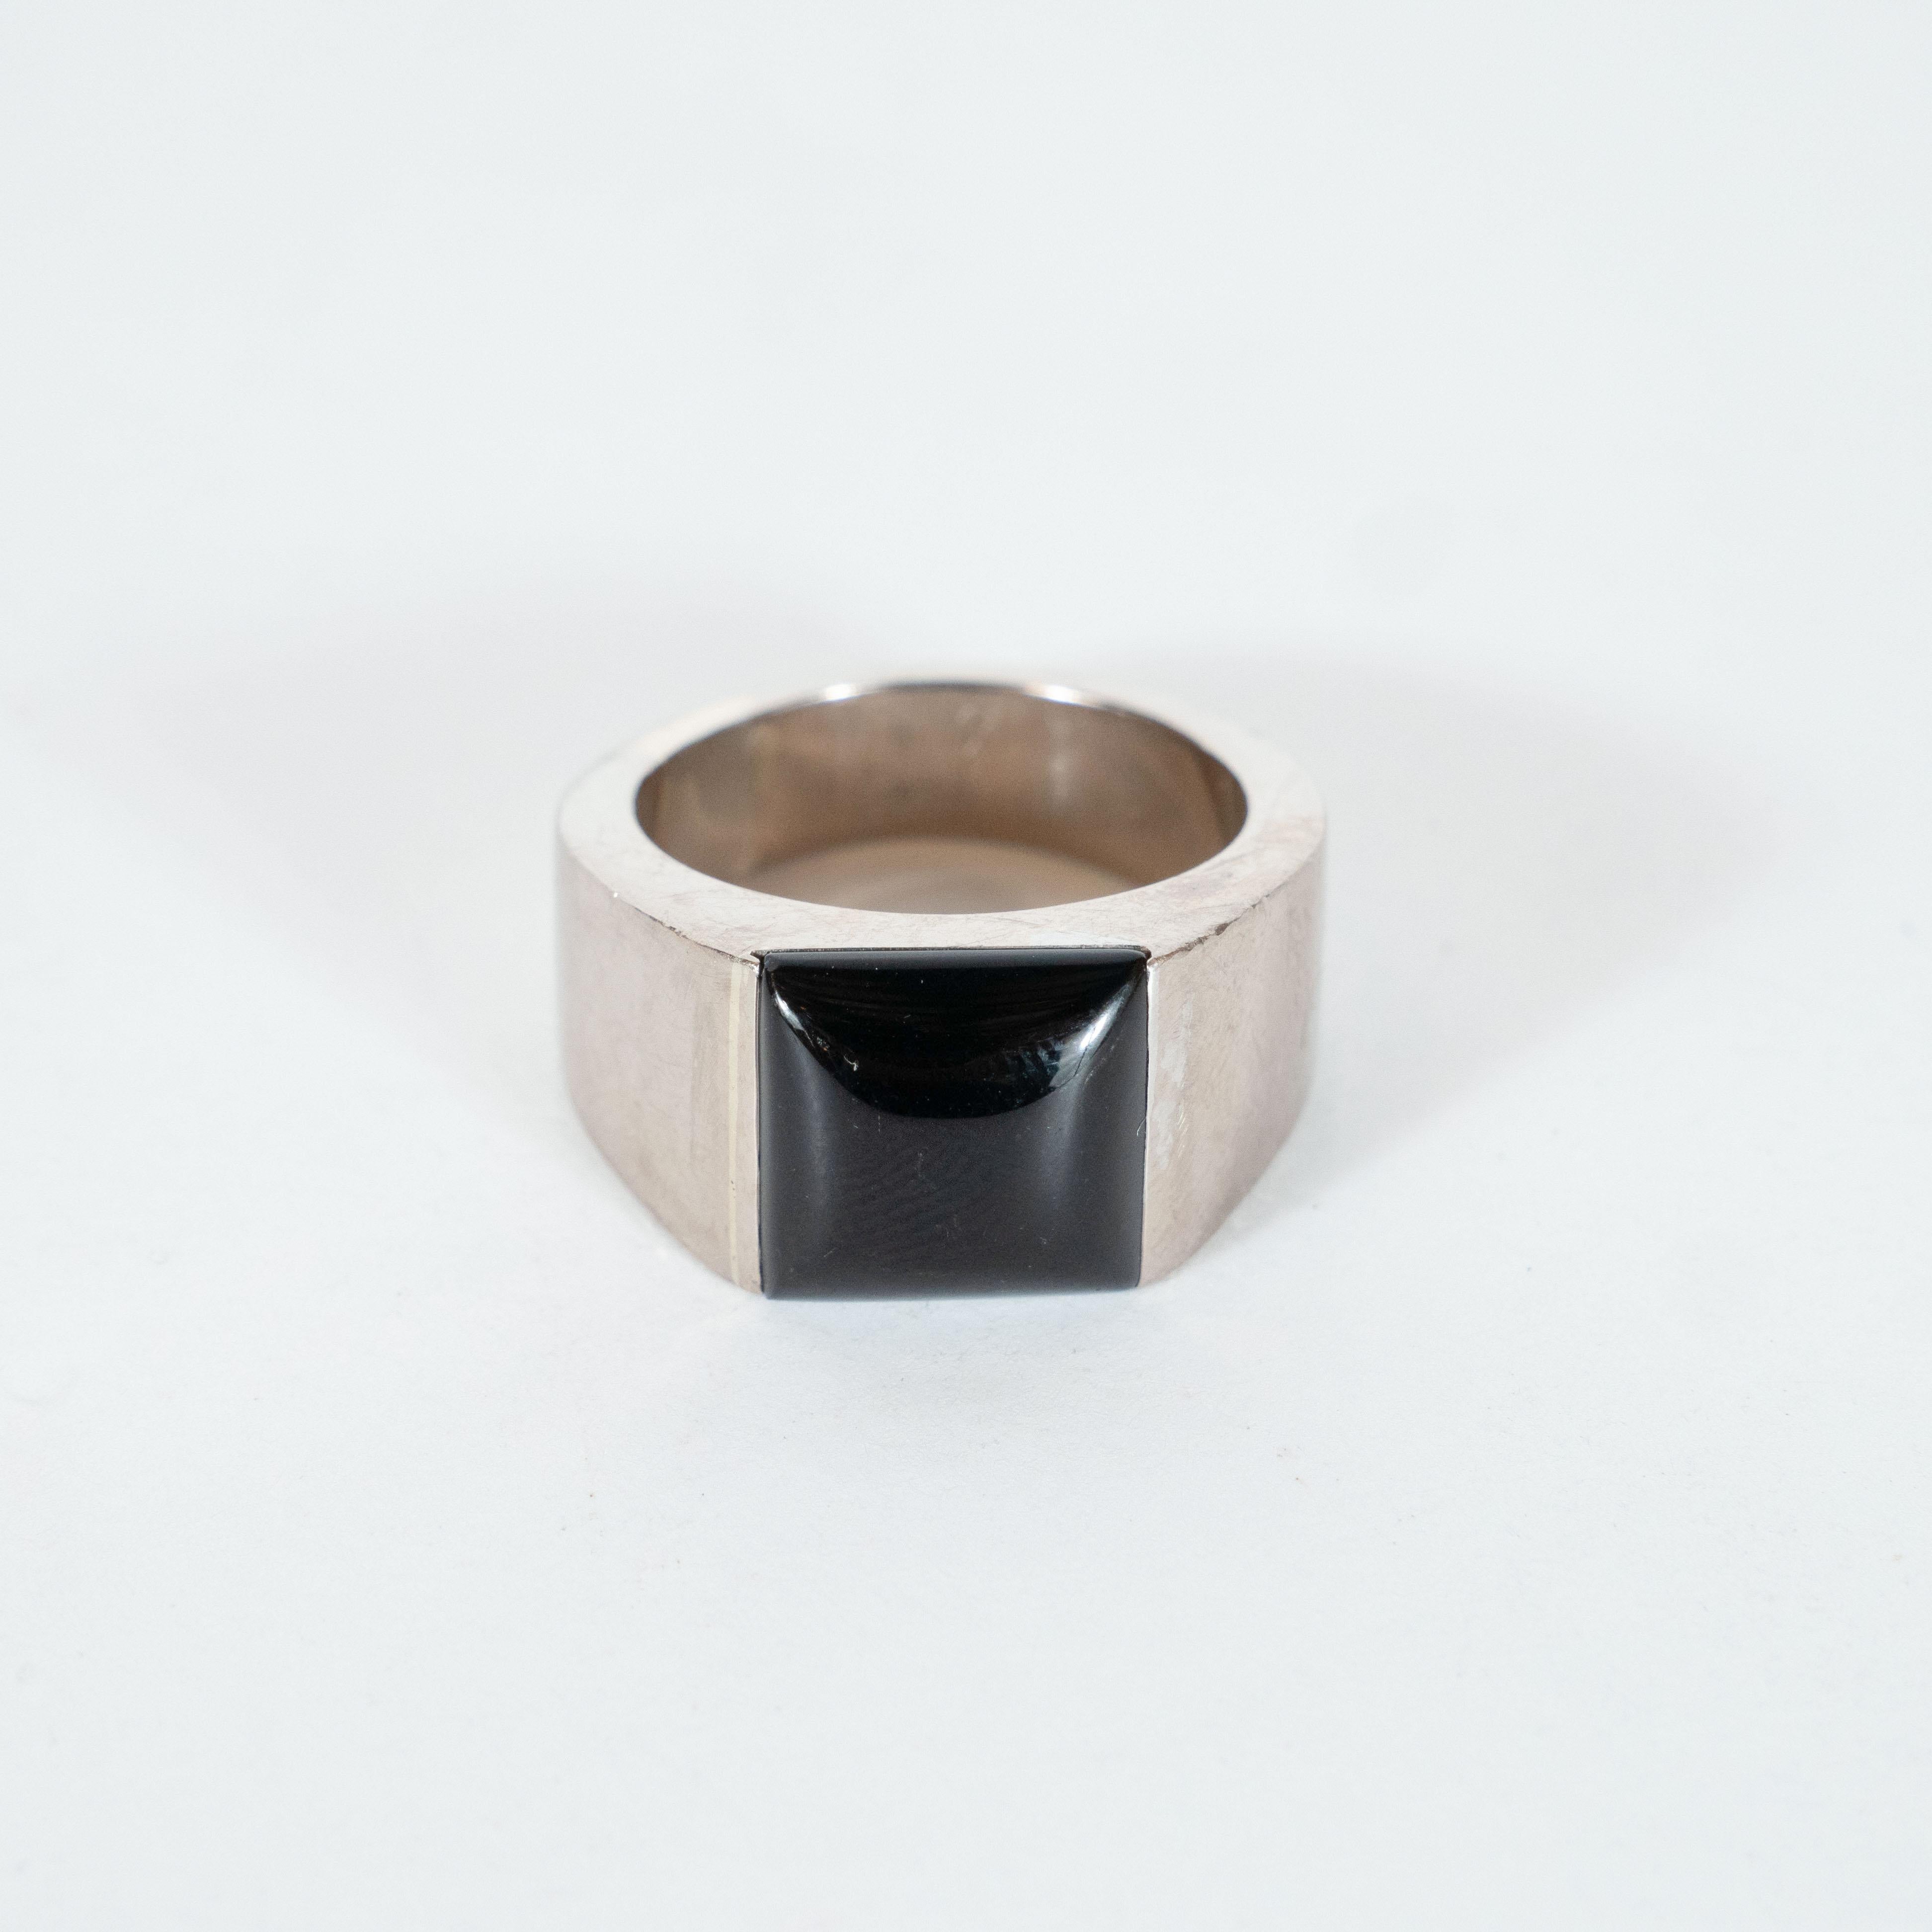 Dieser elegante:: modernistische Ring wurde von Cartier - einem der weltbesten Schmuckhersteller seit seiner Gründung im Jahr 1847 - in Frankreich gefertigt. Der Körper aus 18 Karat Weißgold ist mit einem konkaven:: quadratischen schwarzen Onyx